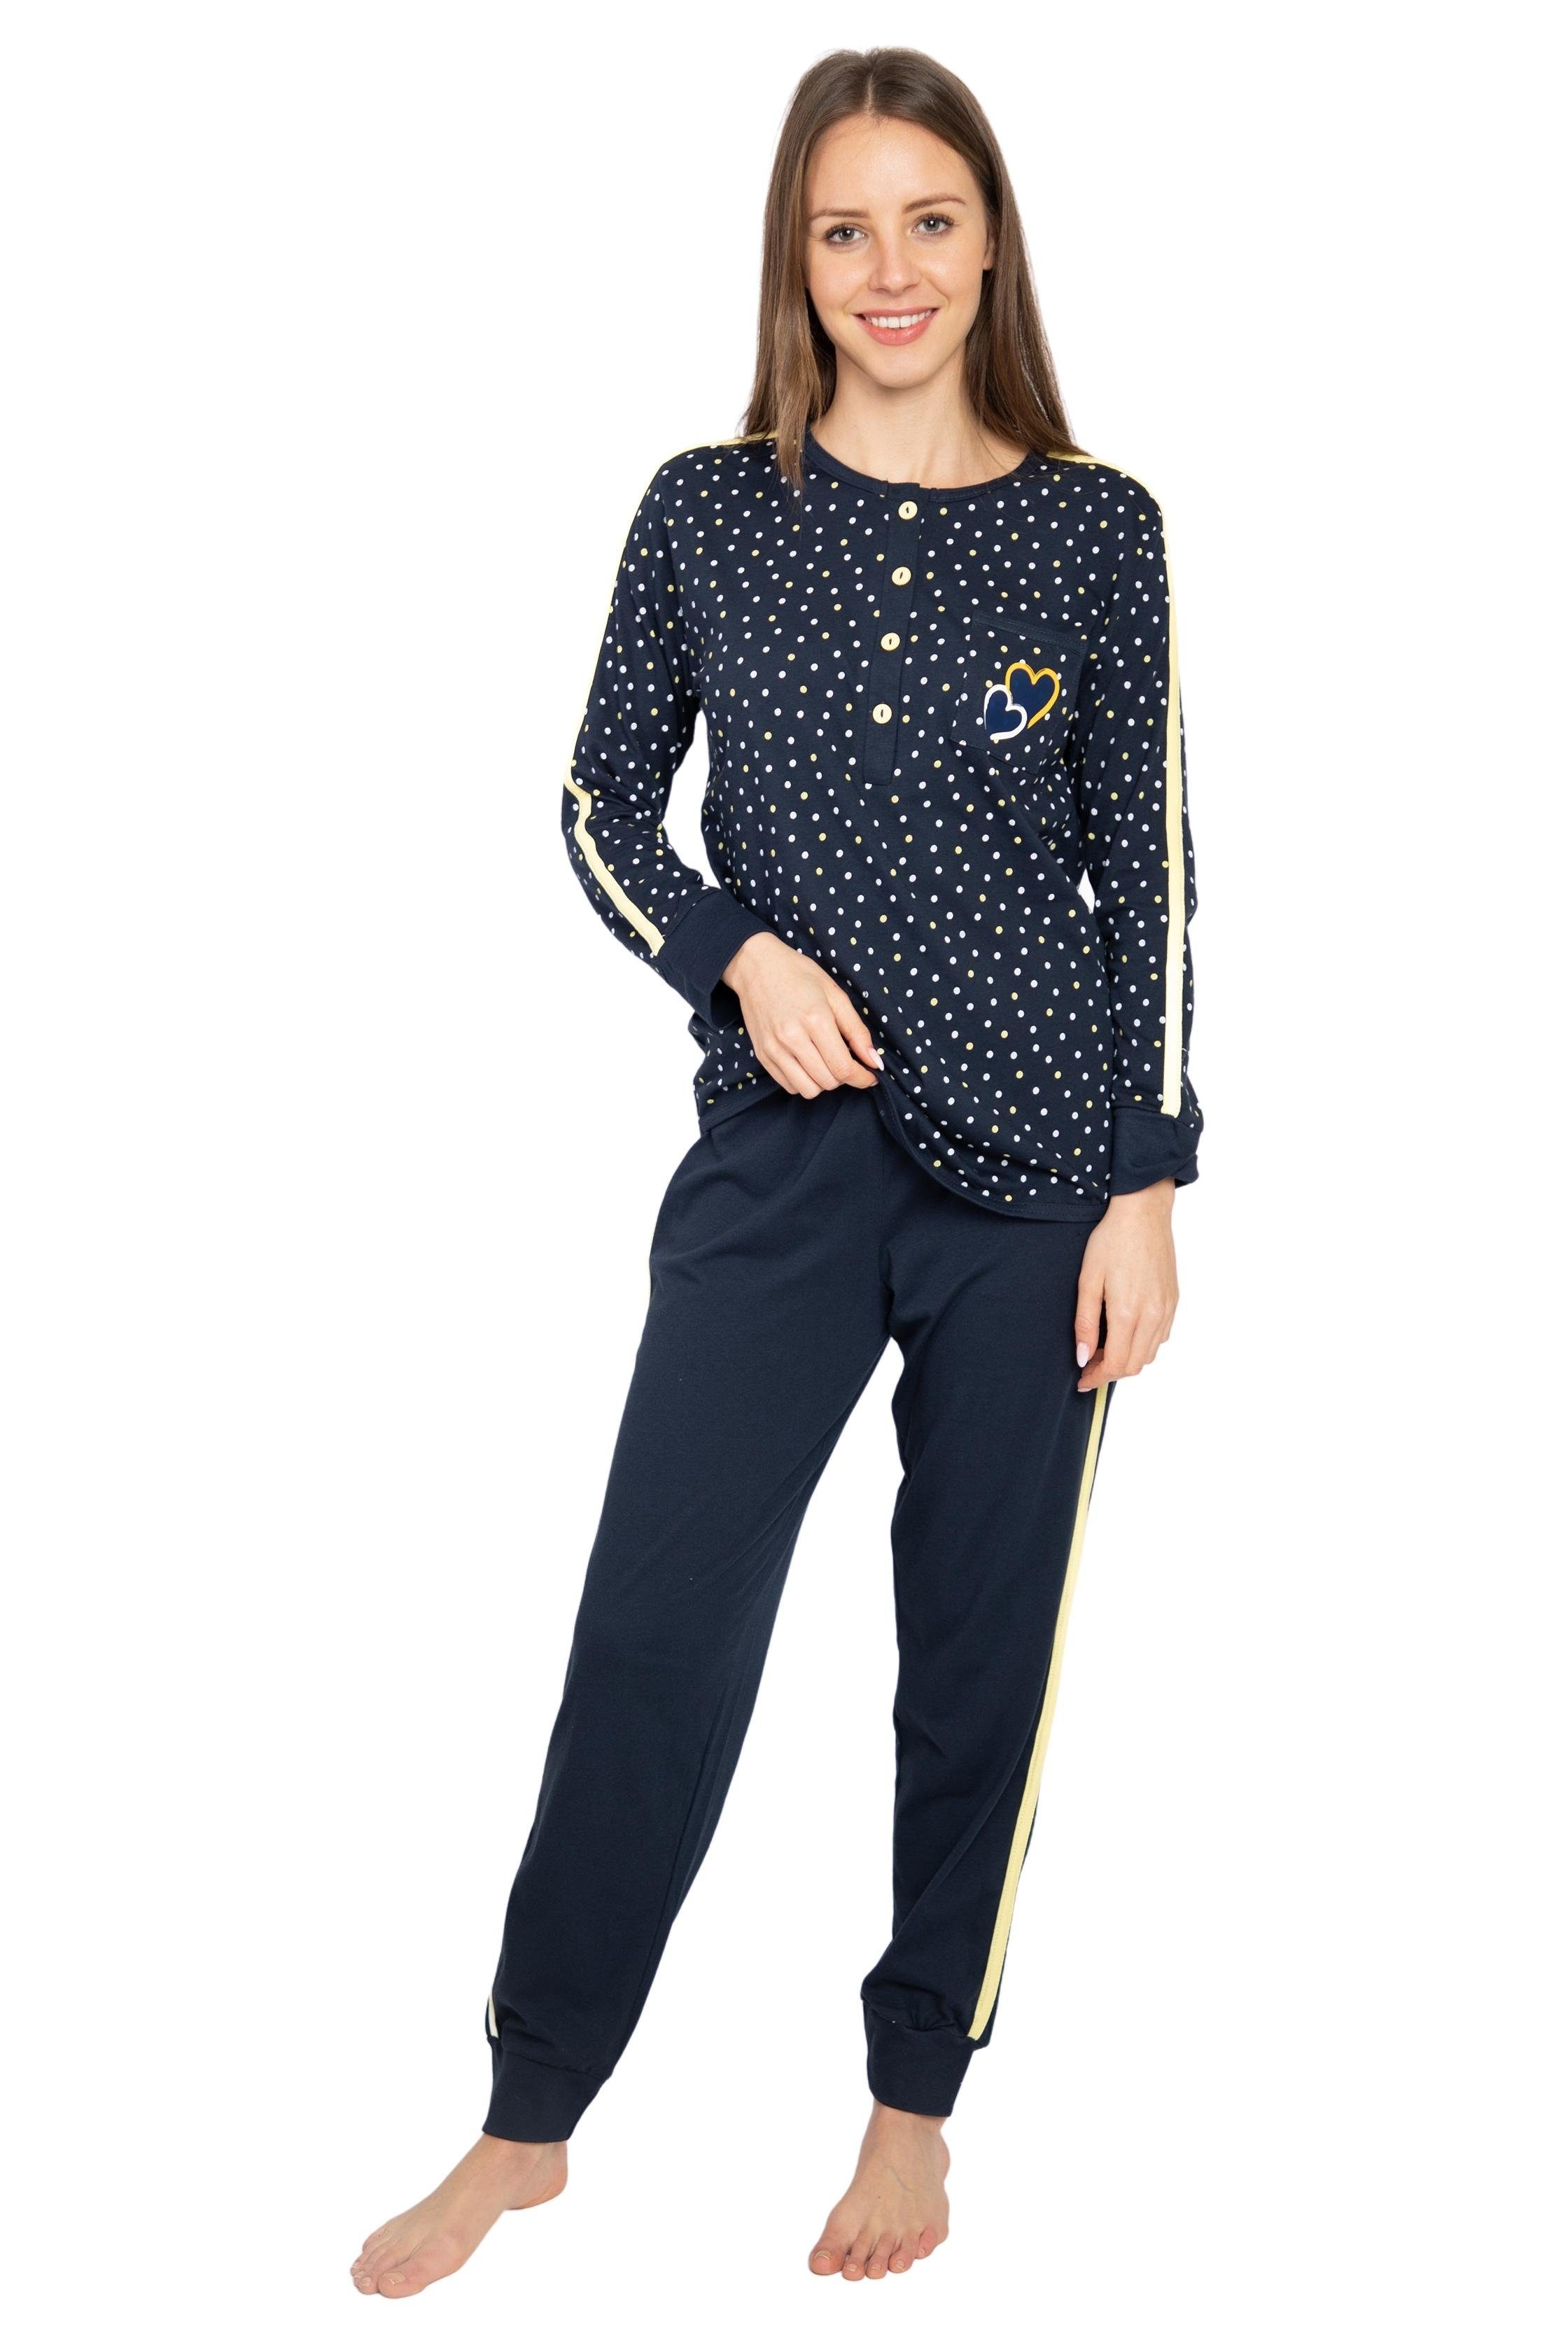 Consult-Tex Pyjama DW727 (Packung) Aus reiner Baumwolle-Jersey Qualität blau-gelb